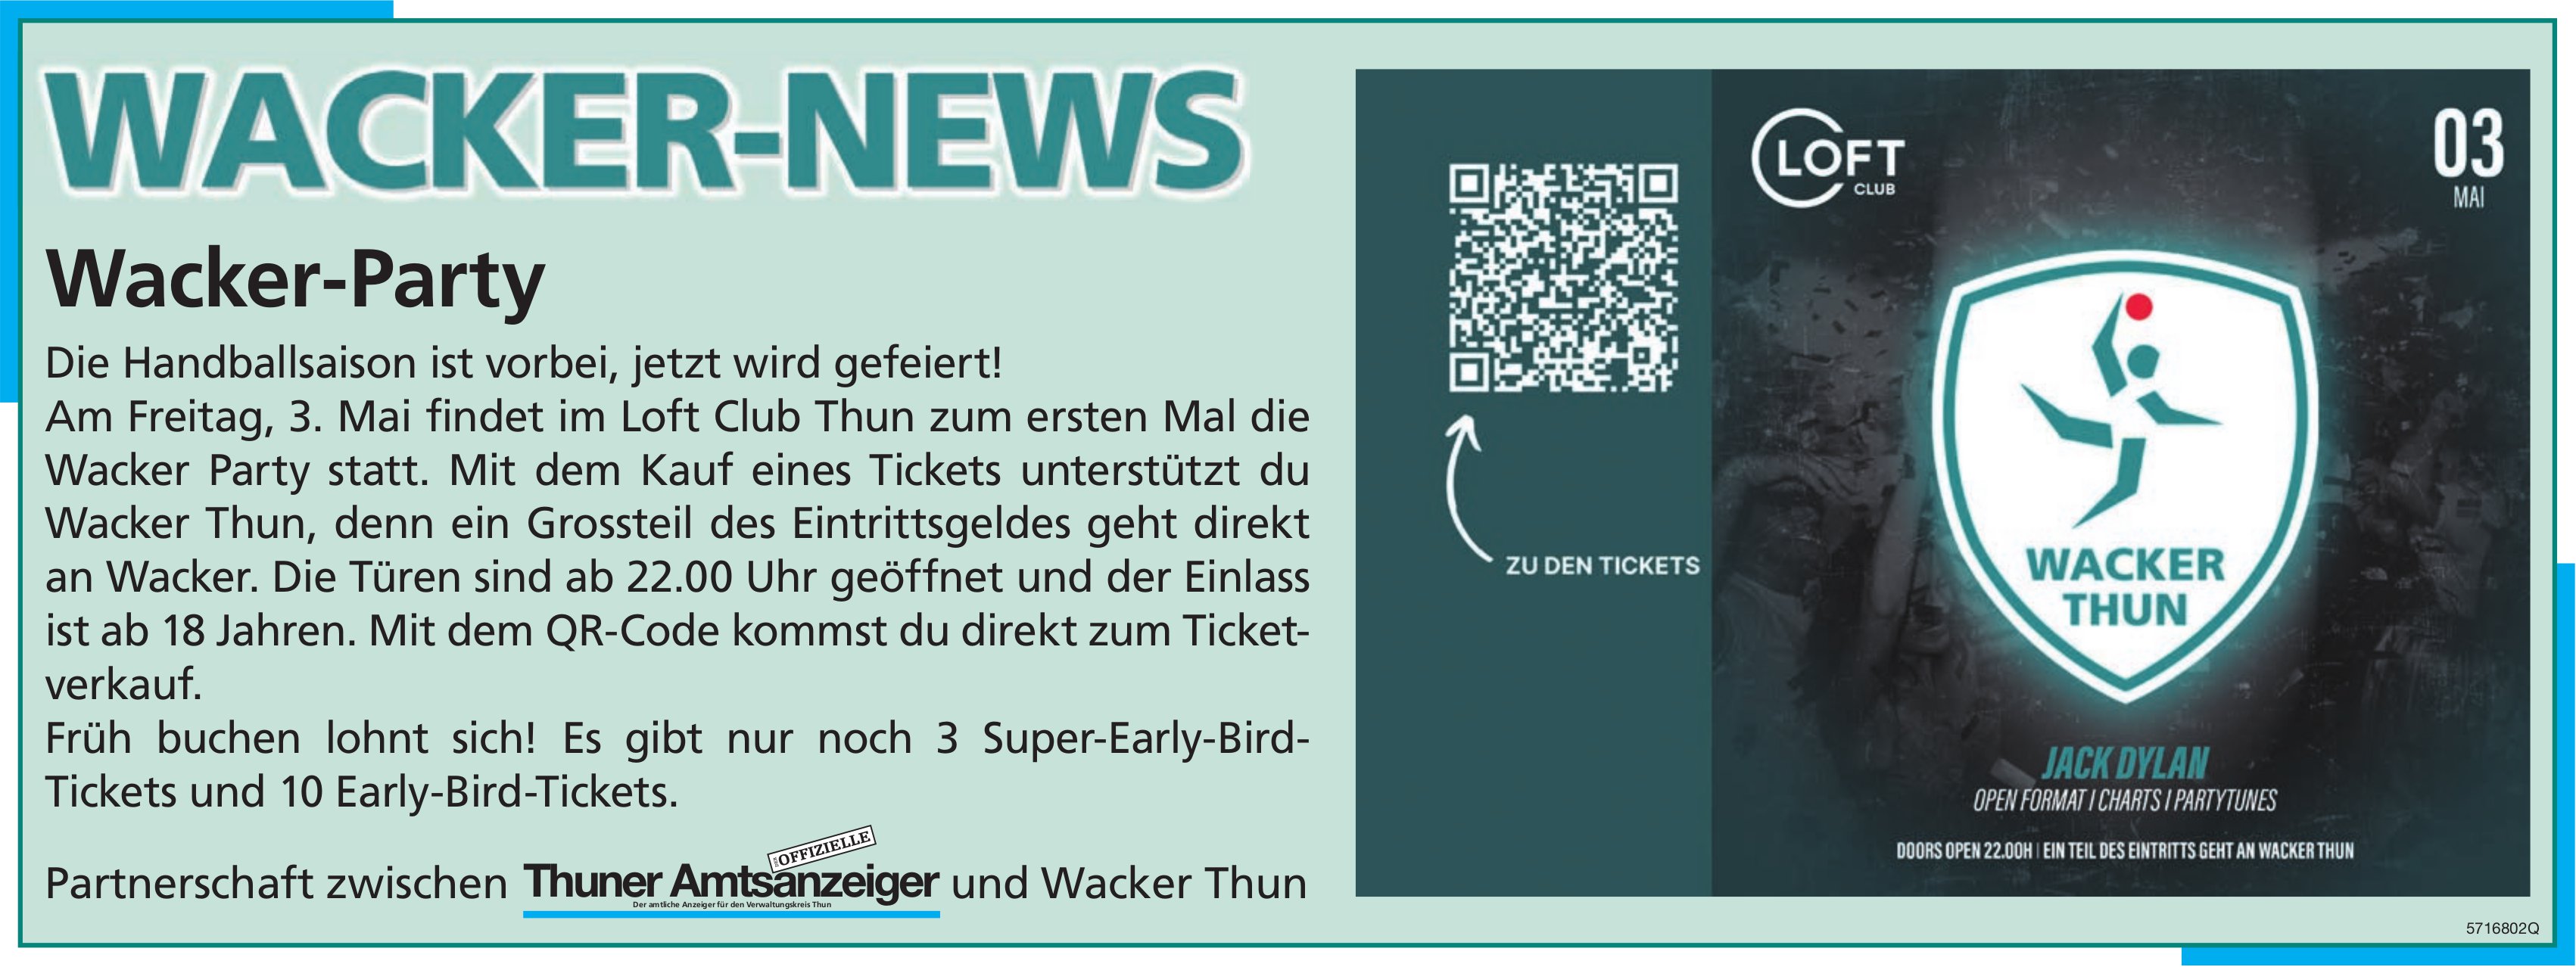 Wacker-News: Wacker-Party, 3. Mai, Thuner Amtsanzeiger / Wacker Thun